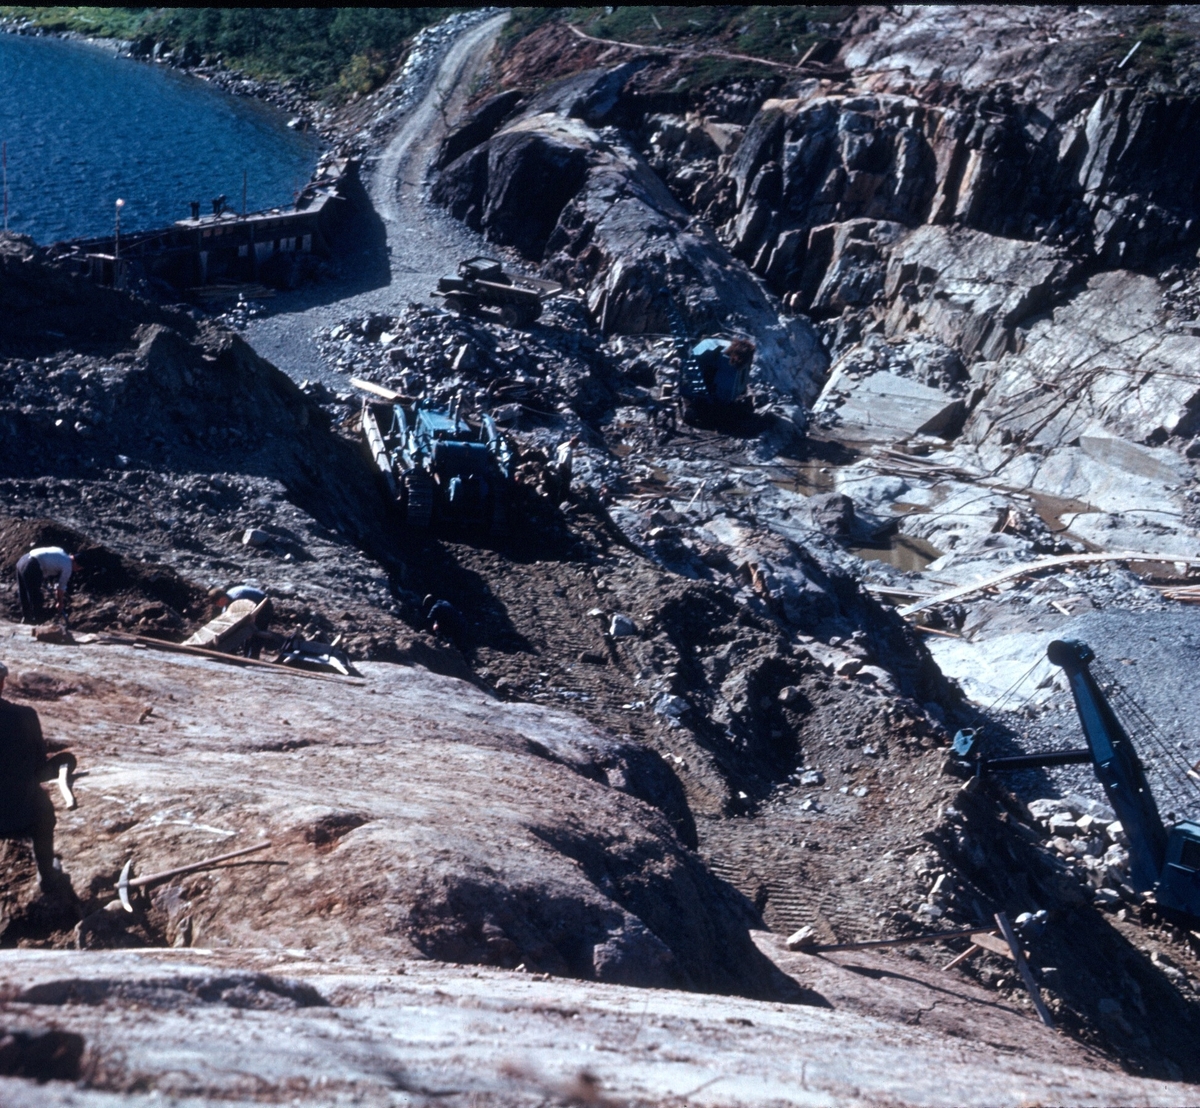 Stryknesdammen,med den gamle dammen frå 1940 i bakgrunnen.
bilde er tatt av Thorbjørn Pedersen.